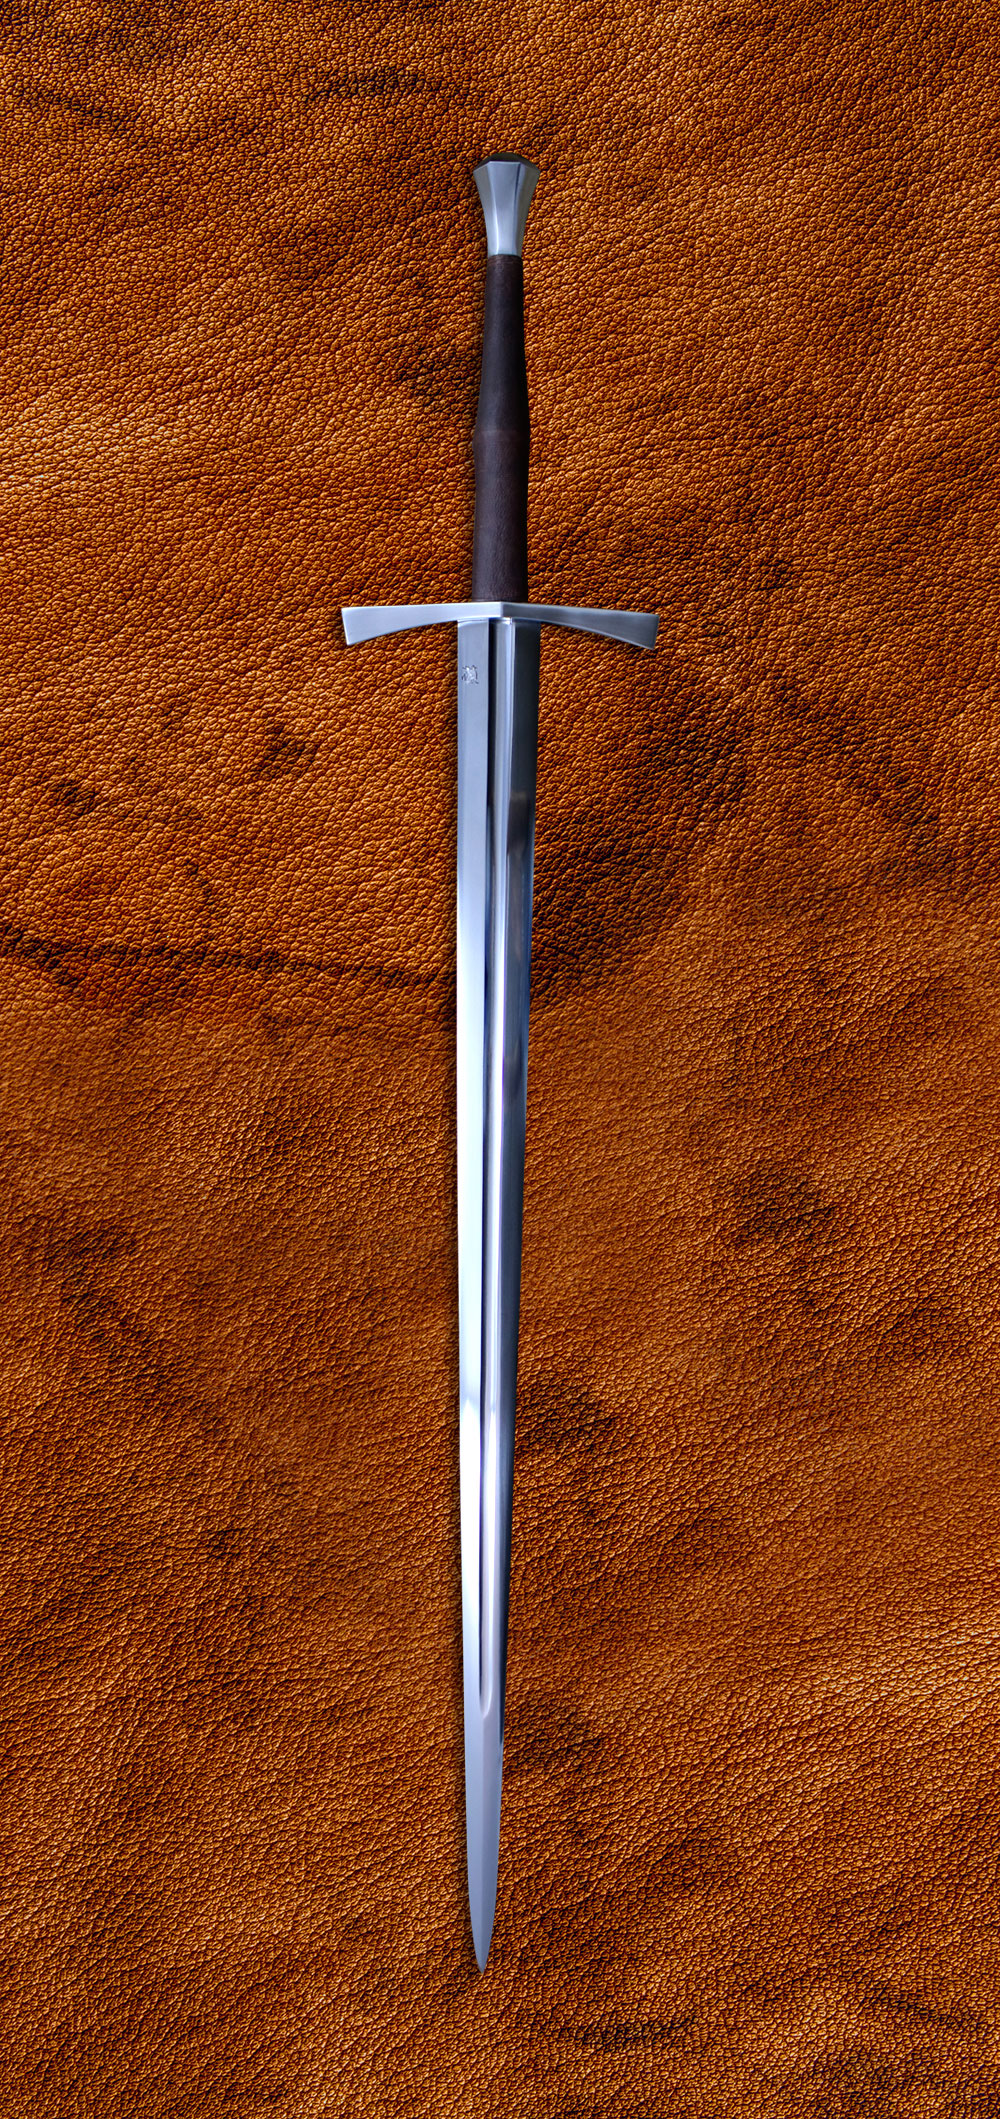 bastard sword size